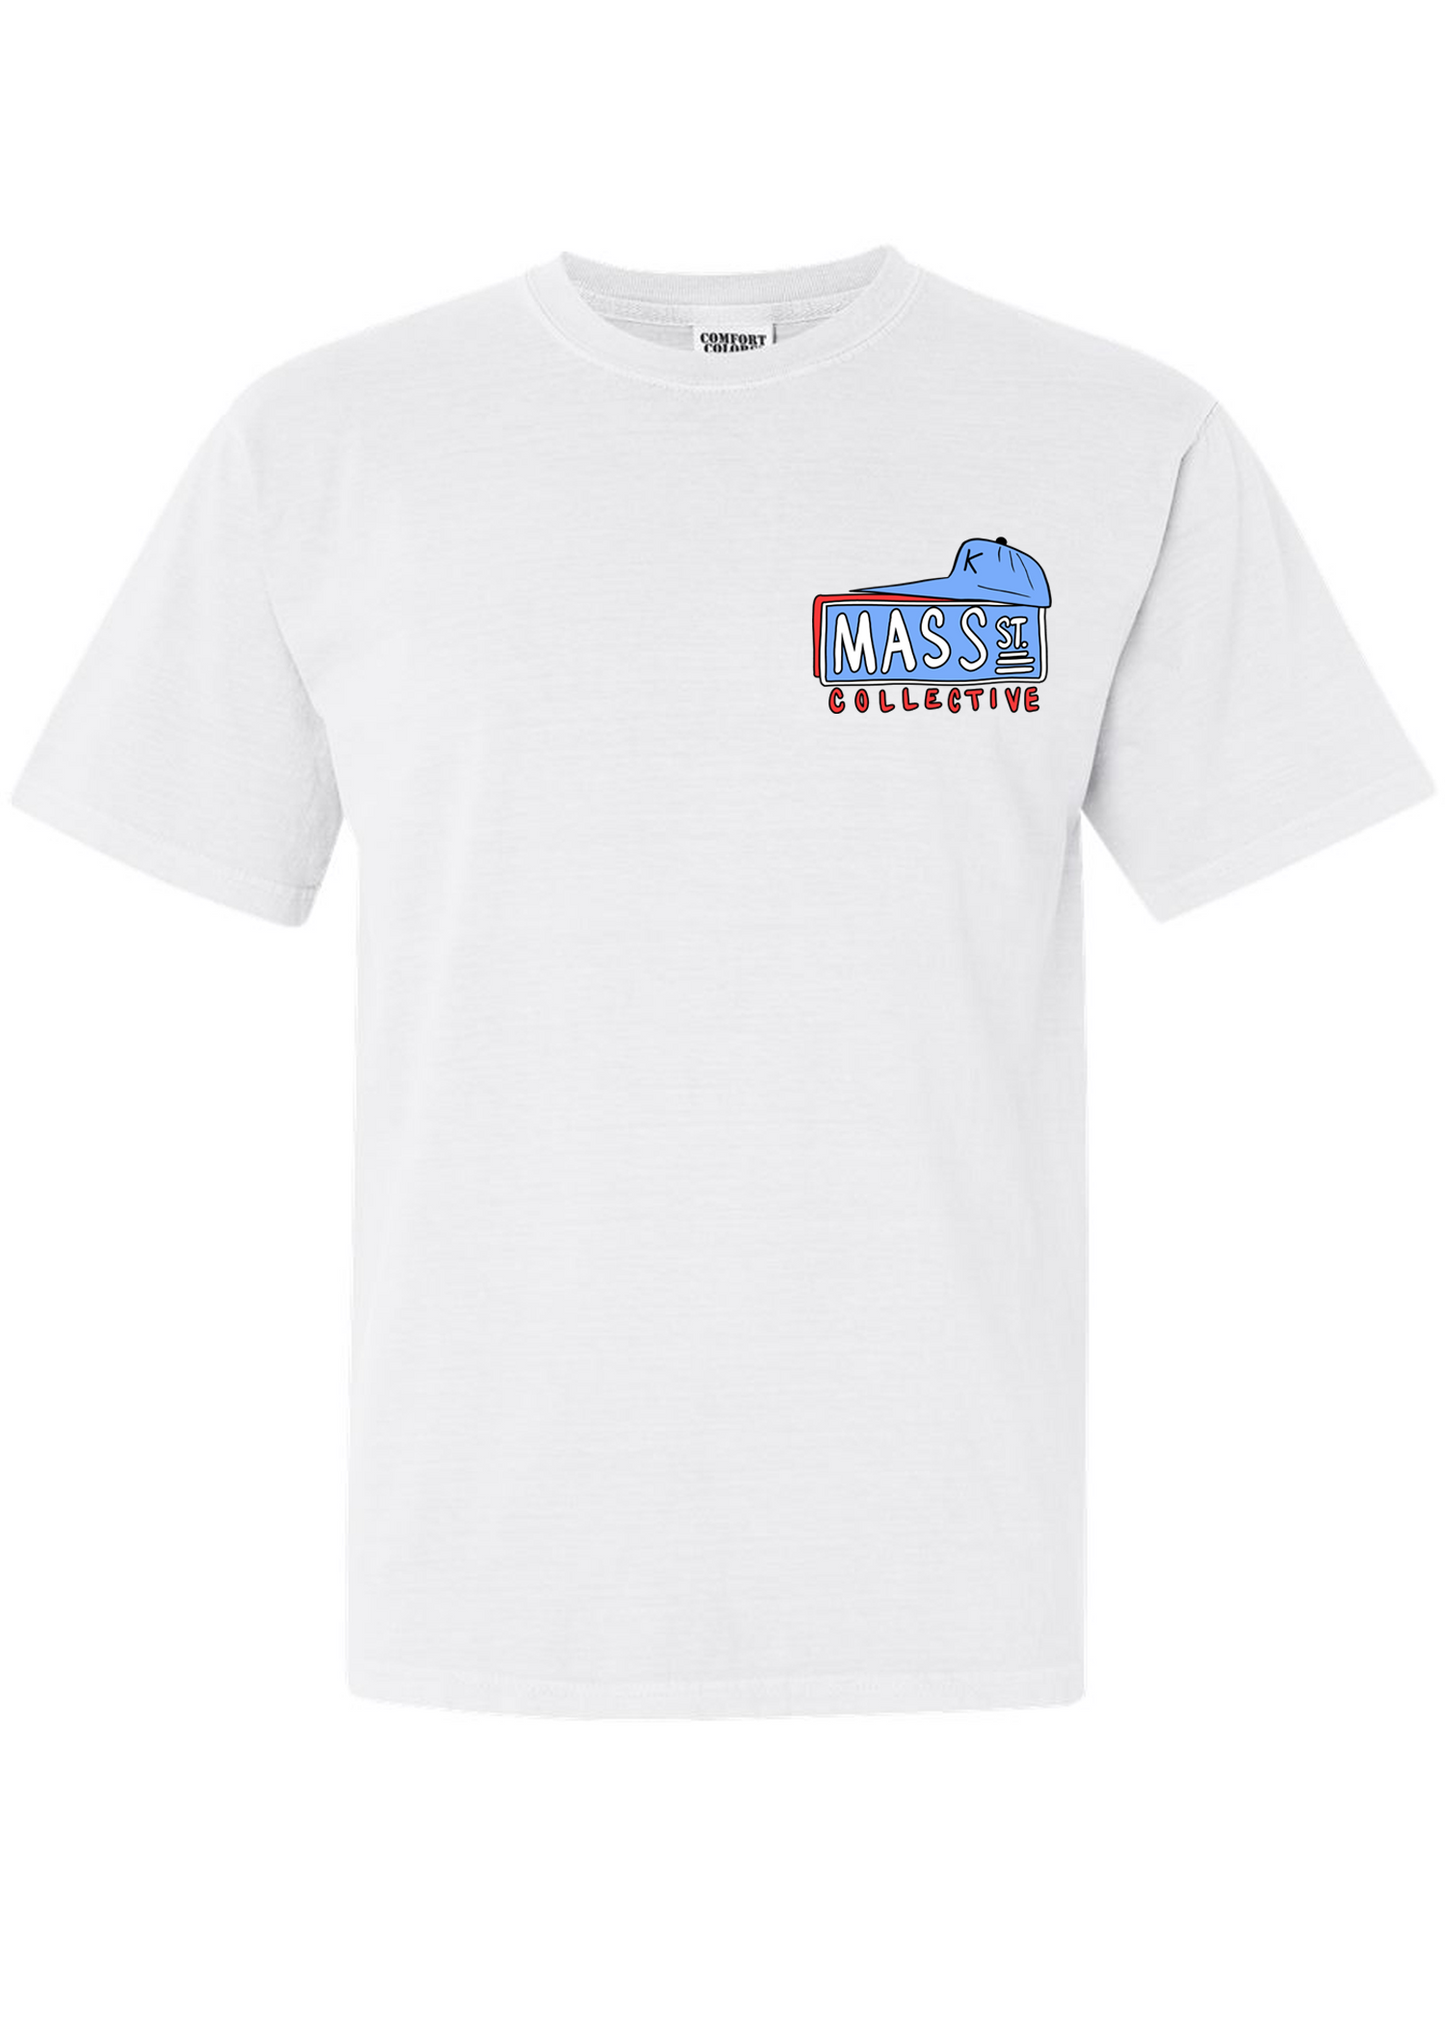 Mass St. Collective x Poppyhawk Football T-shirt